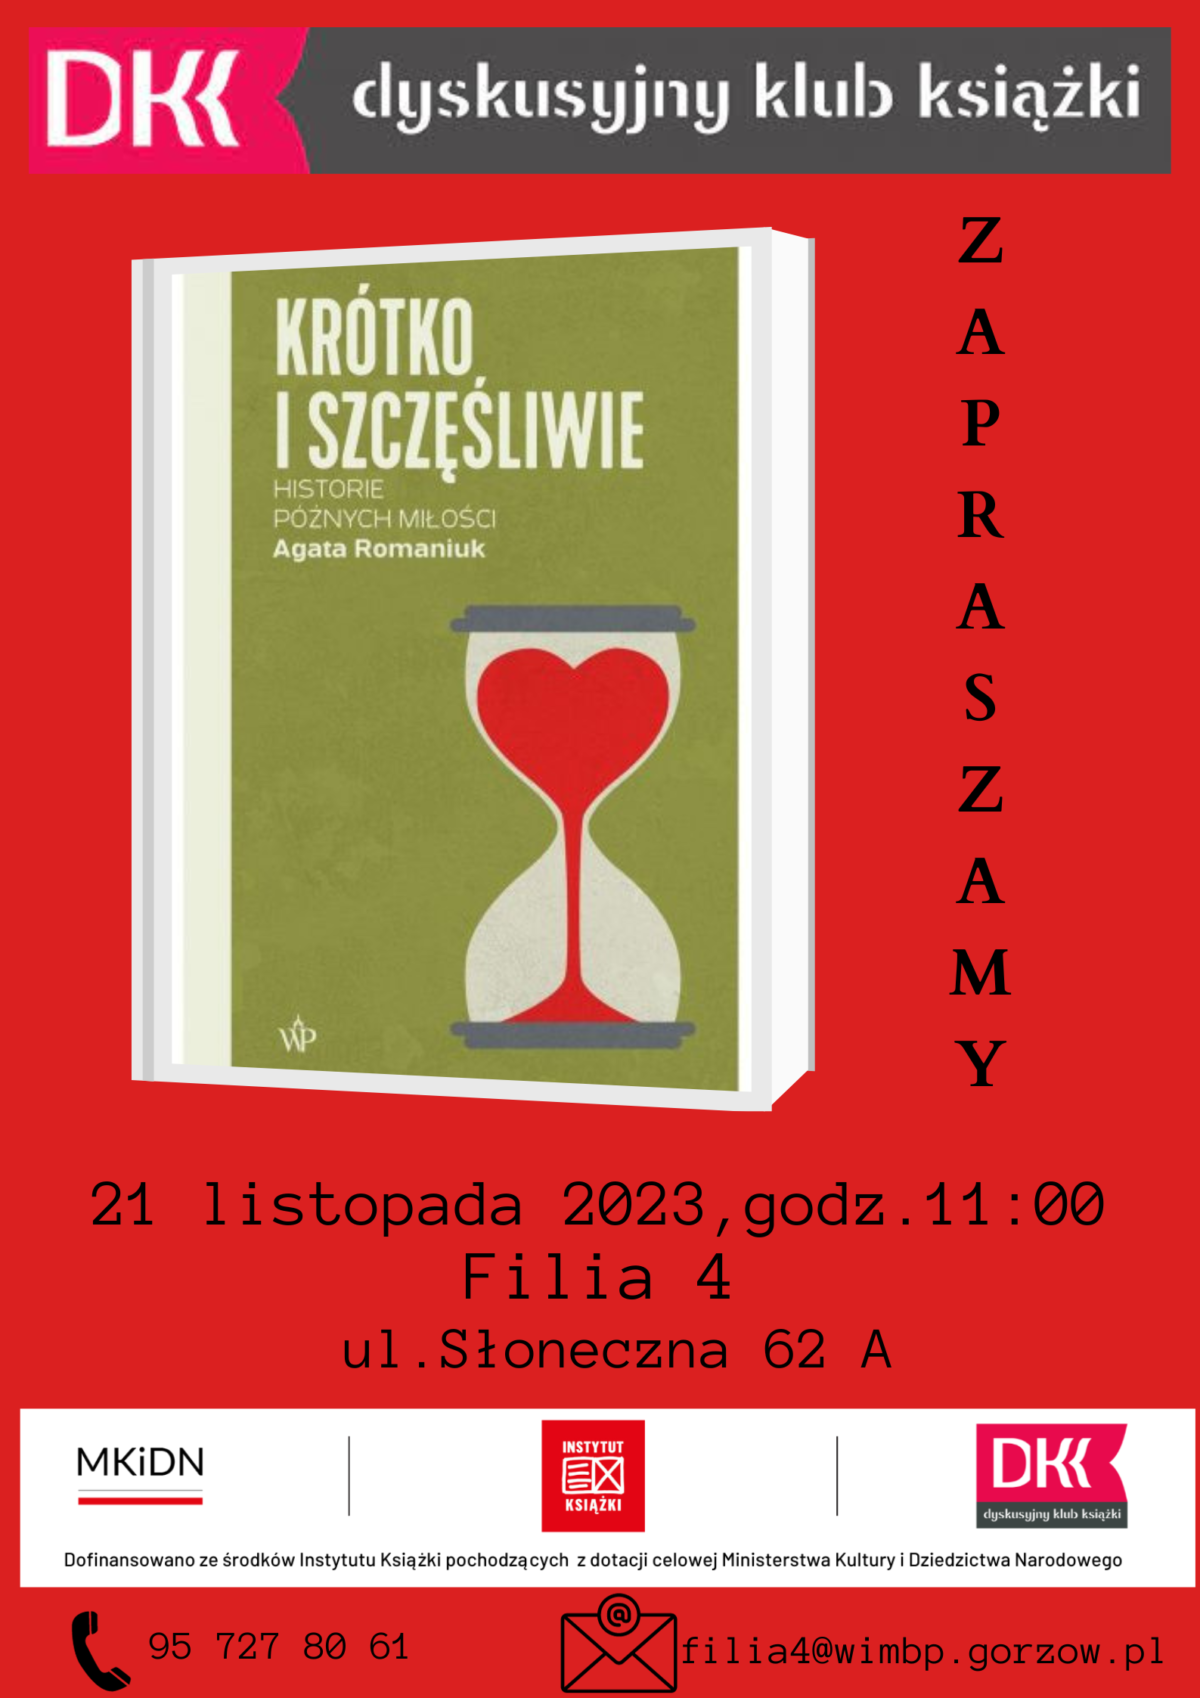 Plakat promujący wydarzenie. Na czerwonym tle okładka omawianej książki, powyżej logo DKK oraz informacje o terminie spotkania.